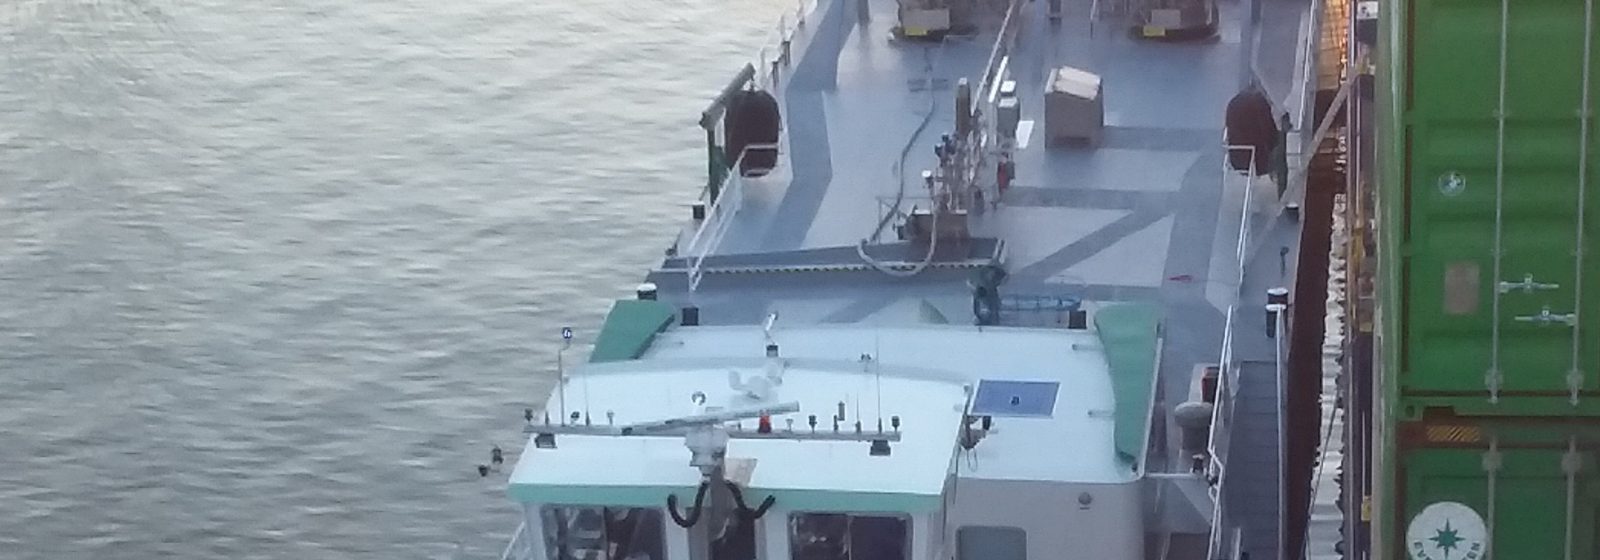 De 'FlexFueler 001' levert vloeibaar aardgas aan containerschip 'Wes Amelie' in Antwerpse haven